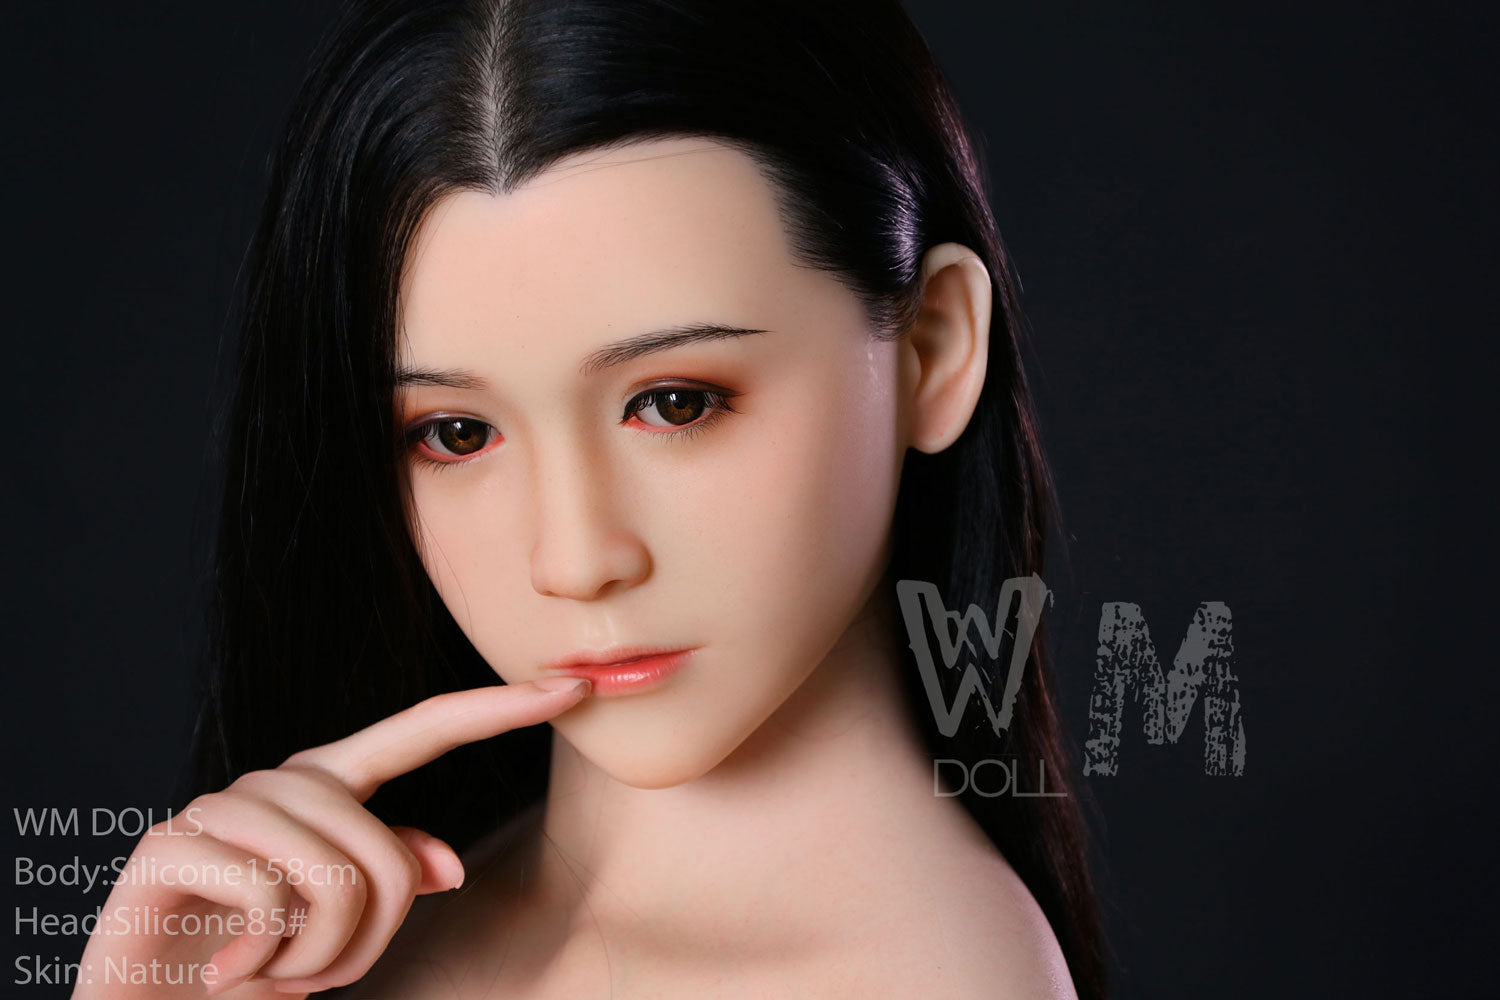 WM Doll 158 cm Silicone - Lara | Buy Sex Dolls at DOLLS ACTUALLY